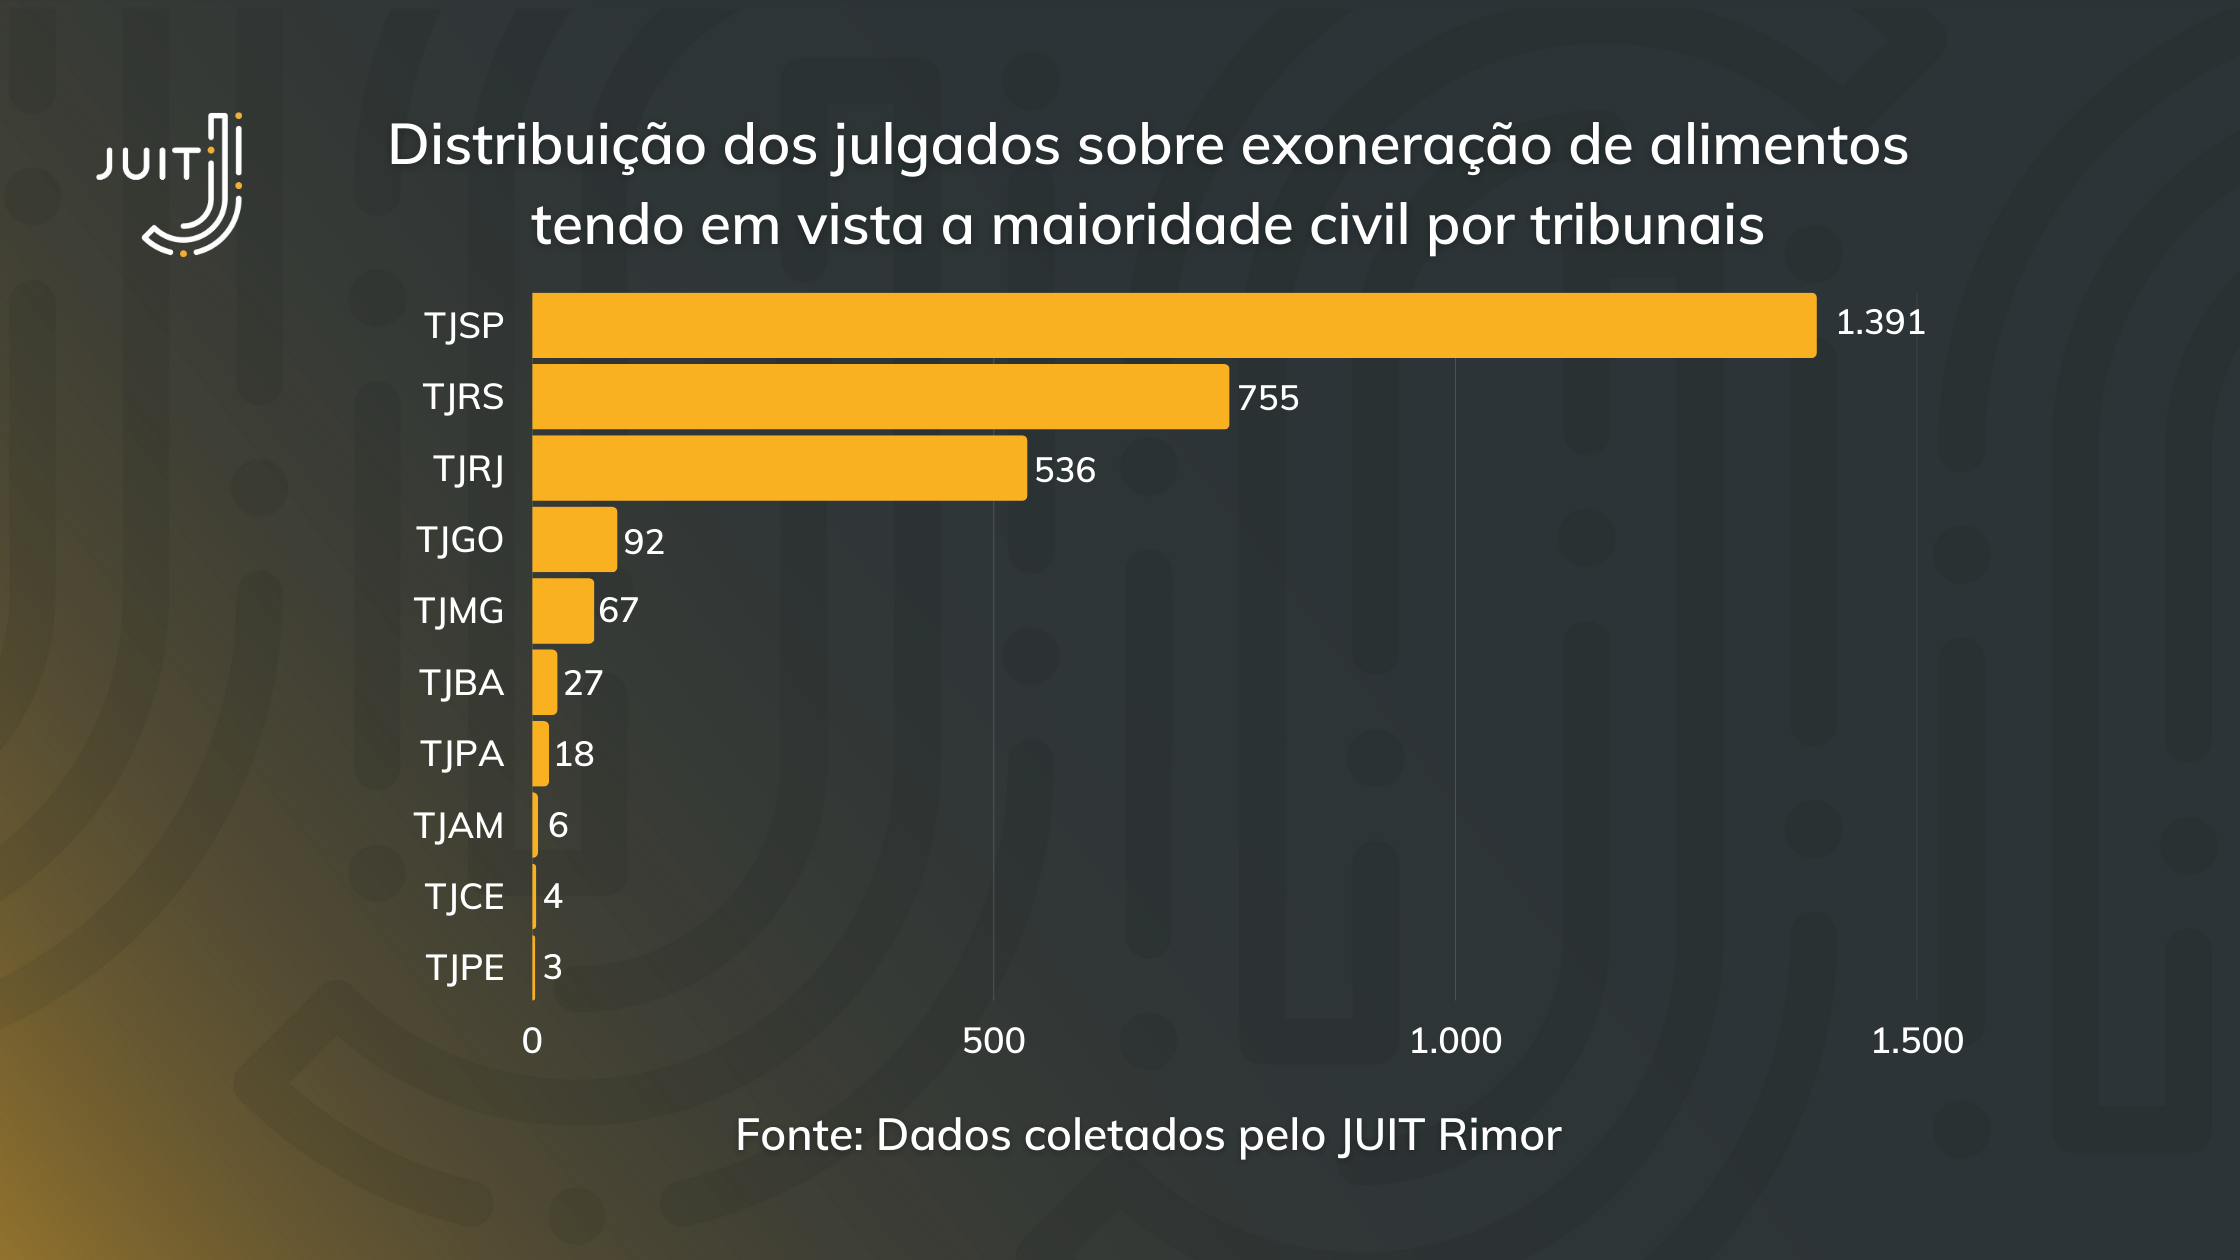 Distribuição dos julgados sobre exoneração de alimentos tendo em vista a maioridade civil por tribunais